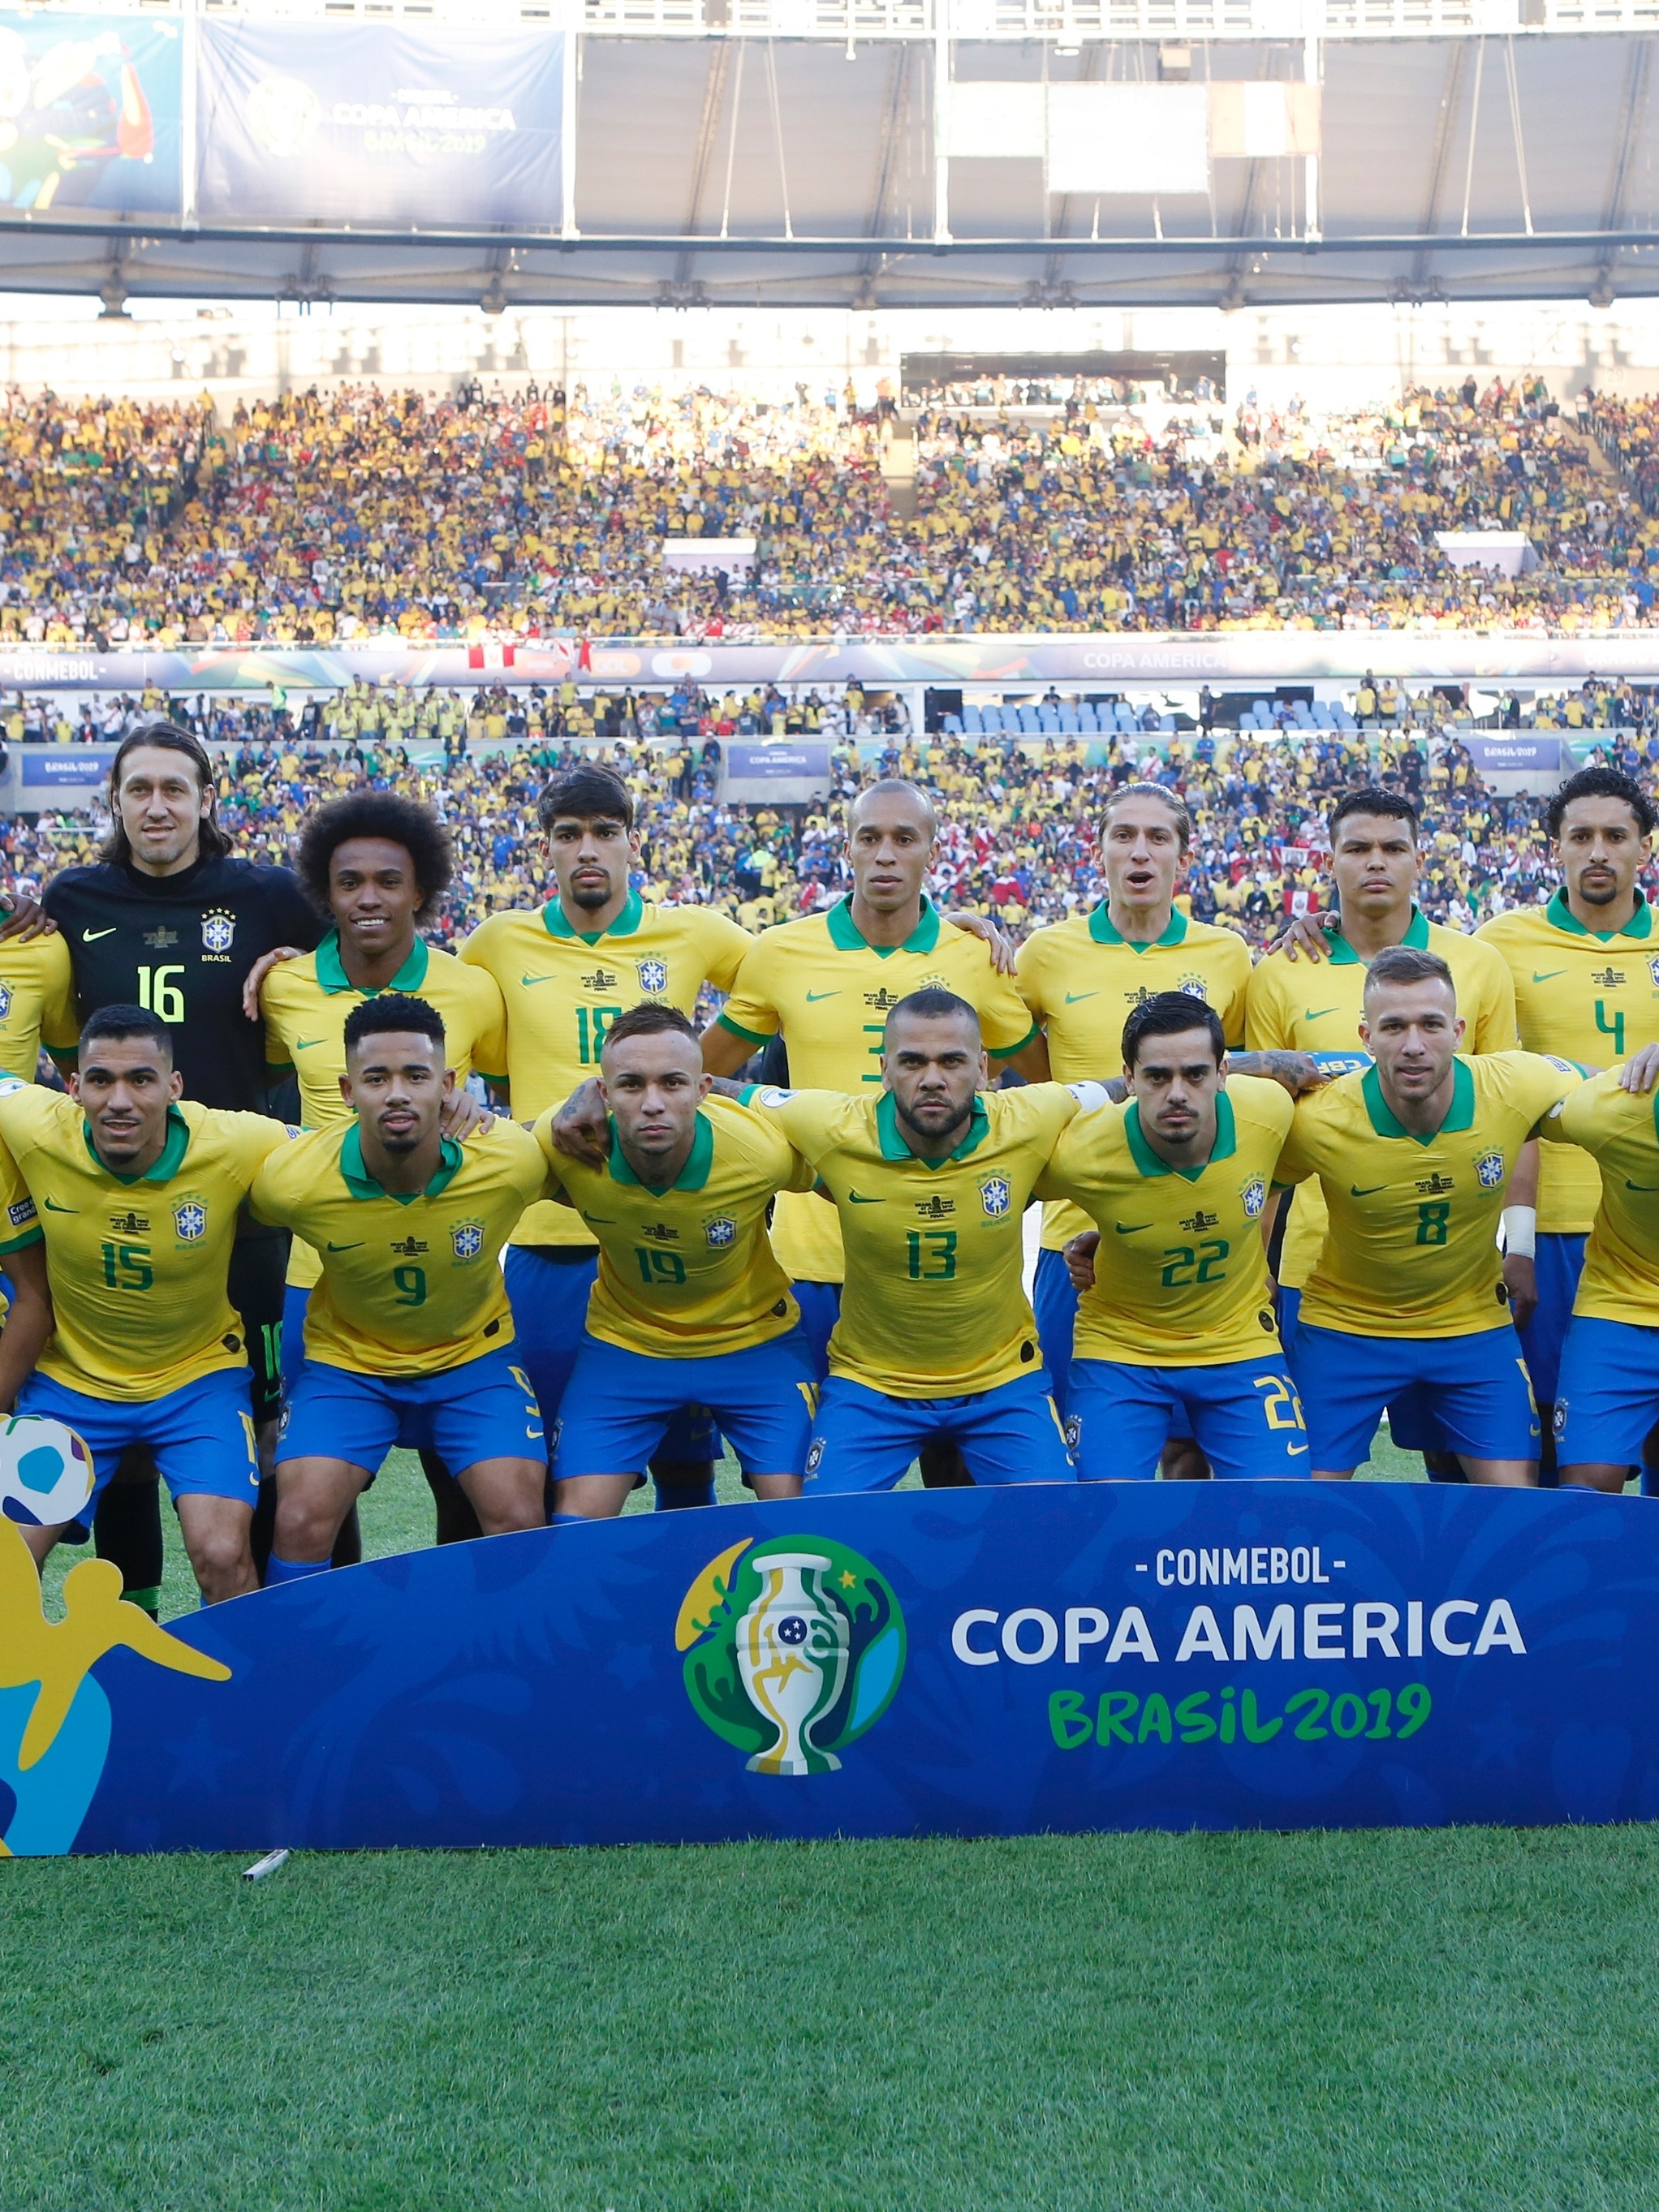 Copa América - #CopaAmérica 🏆 FIM DE JOGO! A Brasil ganhou